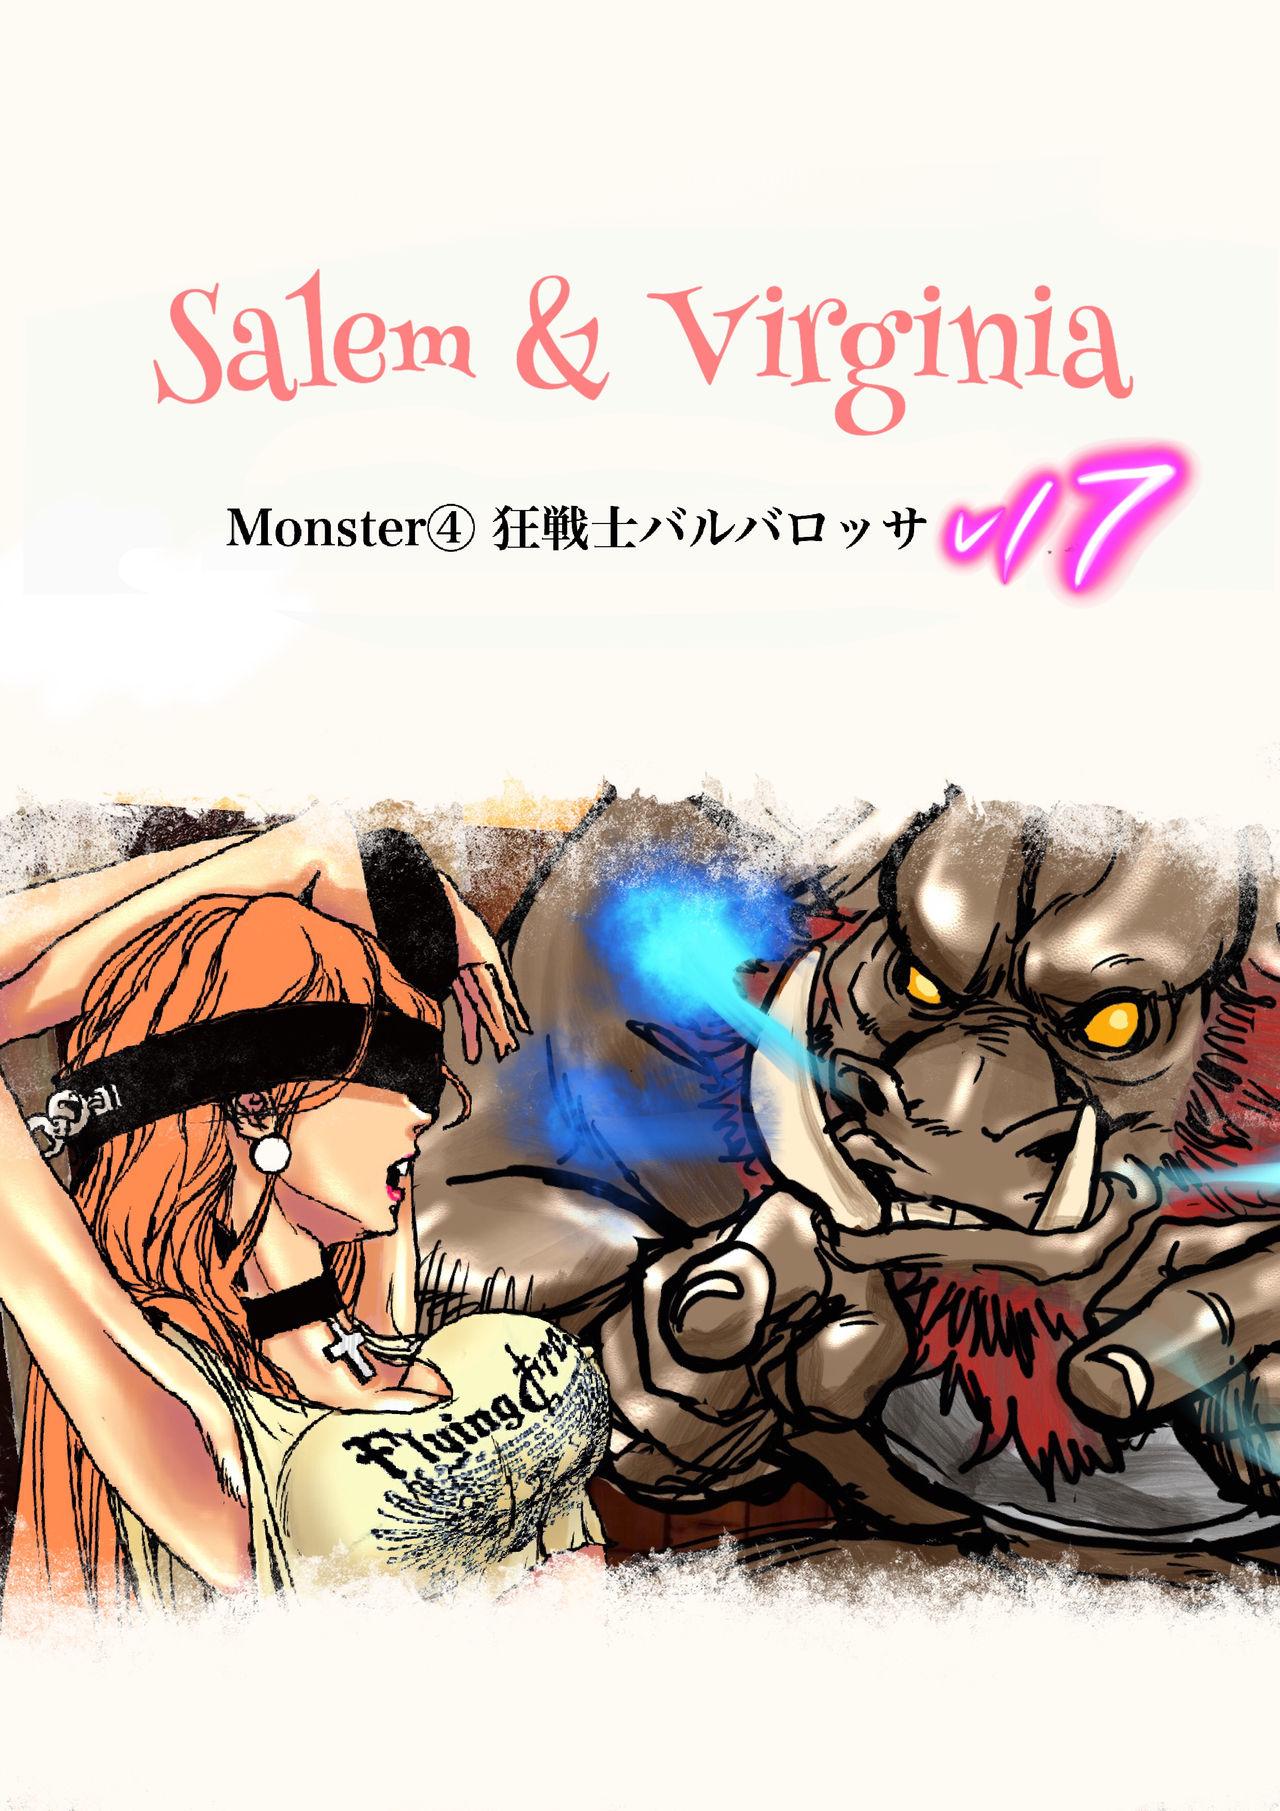 Salem & Virginia 132